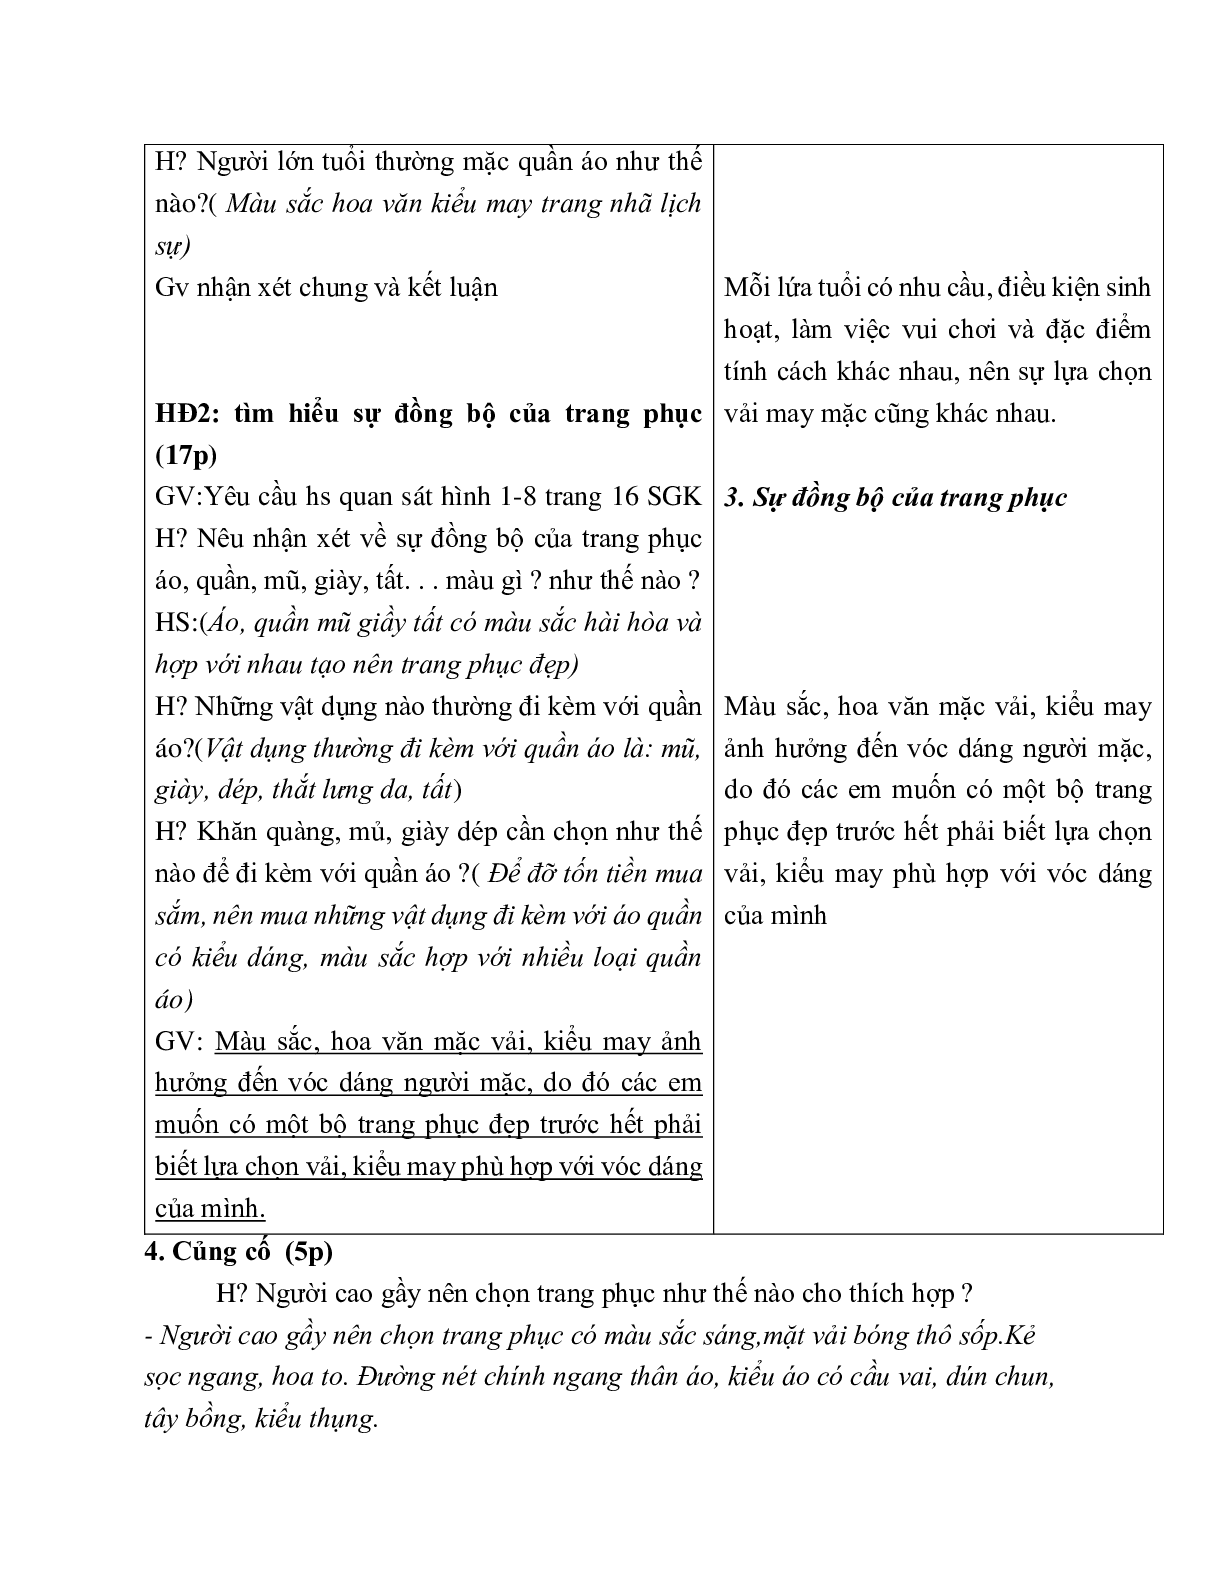 GIÁO ÁN CÔNG NGHỆ 6 BÀI 2: LỰA CHỌN TRANG PHỤC (T3) MỚI NHẤT – CV5555 (trang 3)